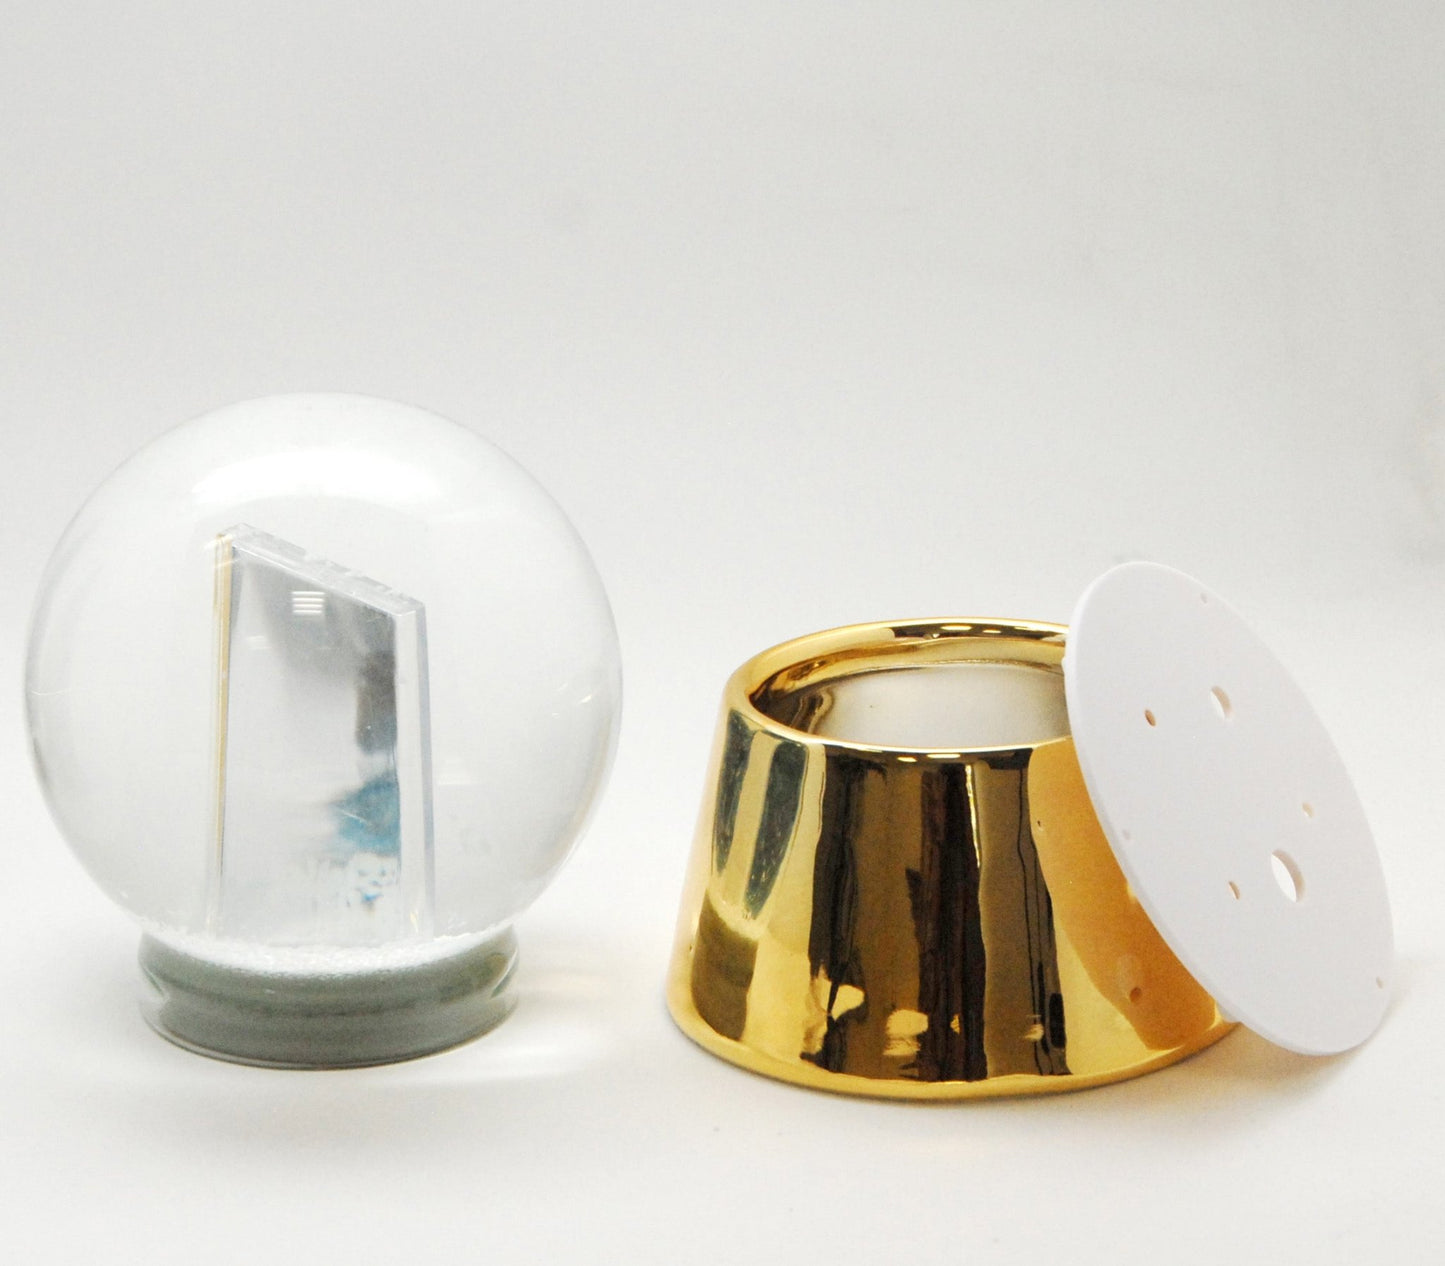 Bastelset mit 100mm Glas für DIY-Schneekugel mit Fotoeinsatz mit Porzellan-Sockel golden glänzend - Schneekugelhaus